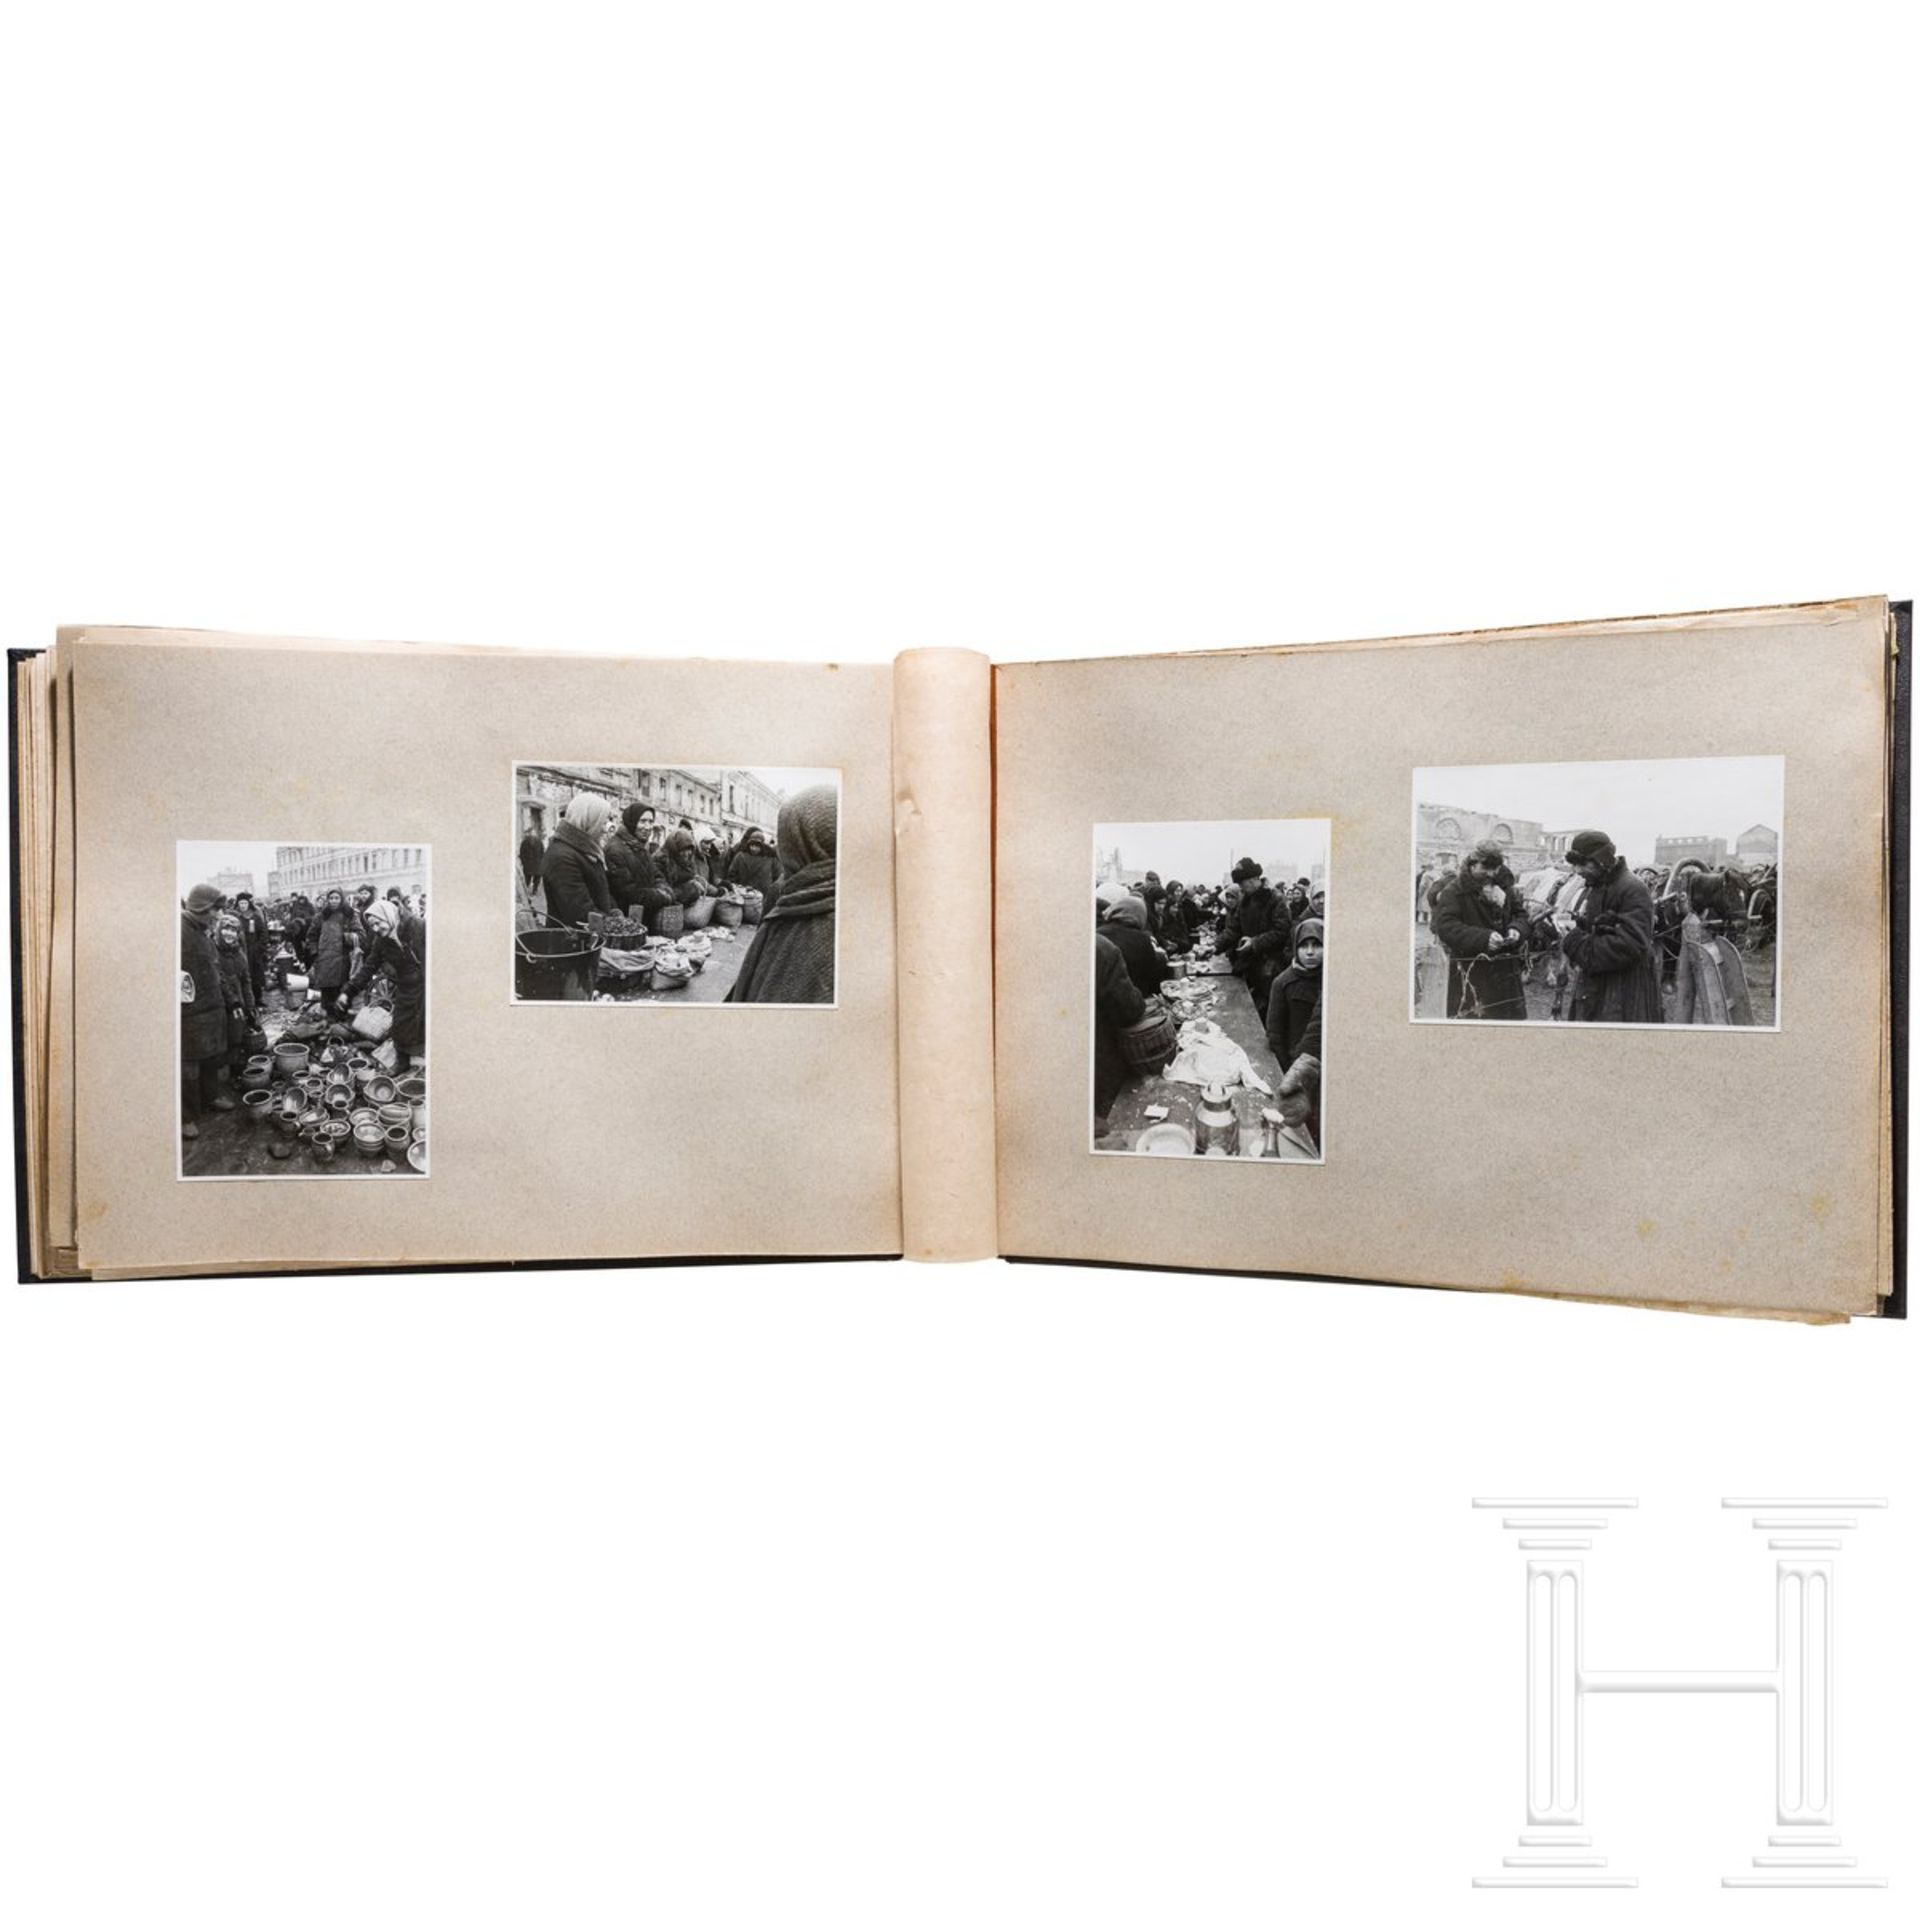 Großformatiges Fotoalbum Smolensk 1943 - Bild 2 aus 3